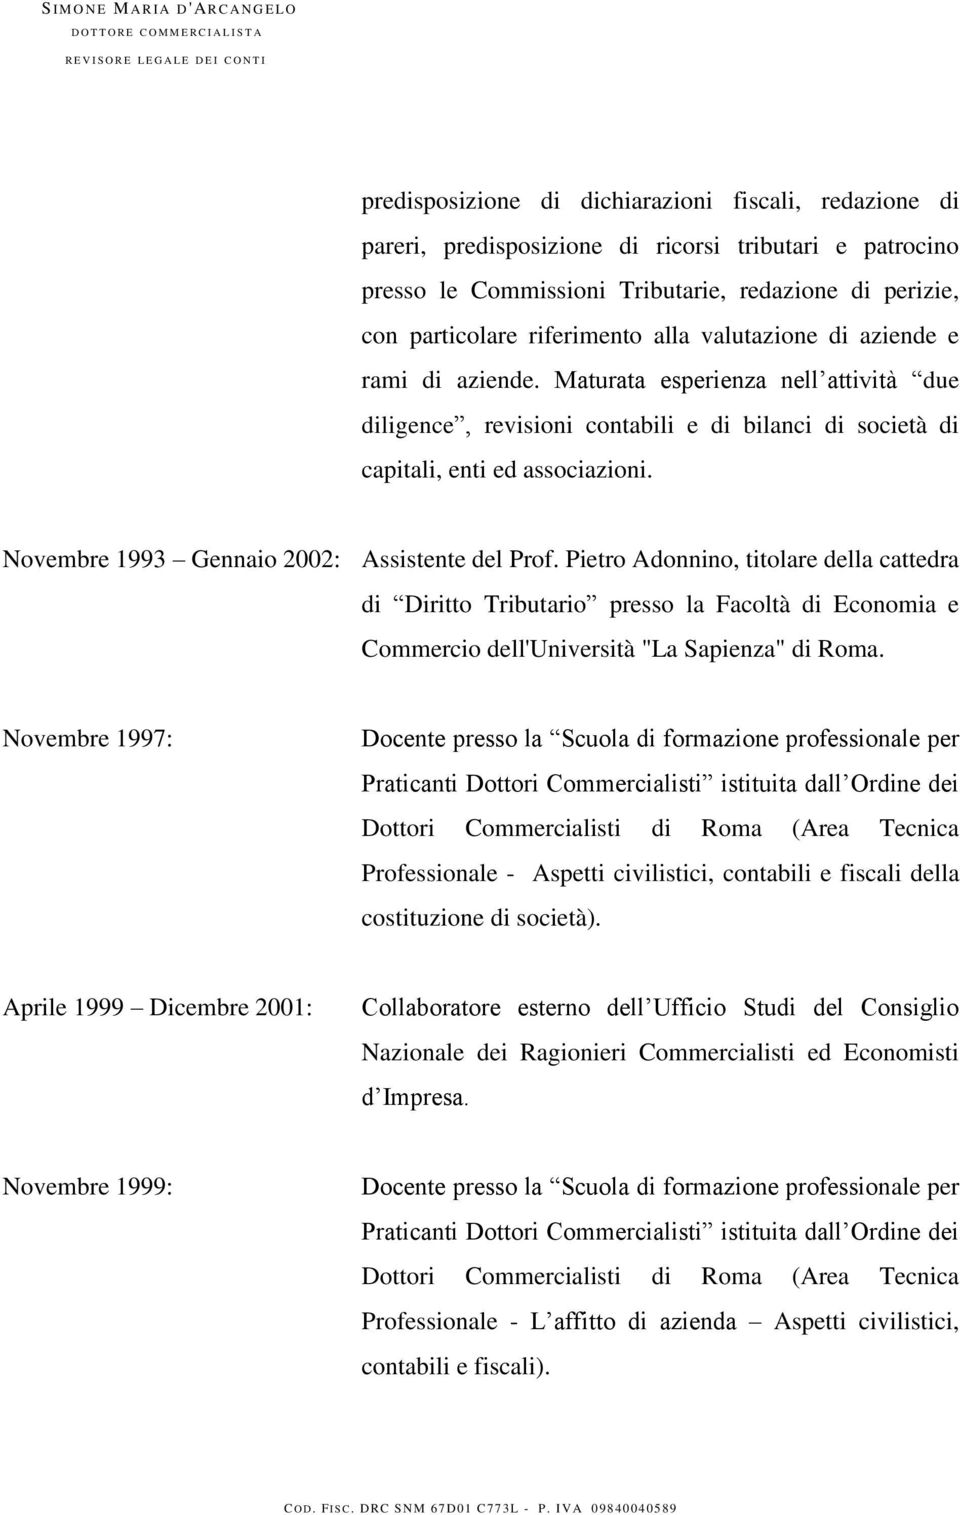 Novembre 1993 Gennaio 2002: Assistente del Prof. Pietro Adonnino, titolare della cattedra di Diritto Tributario presso la Facoltà di Economia e Commercio dell'università "La Sapienza" di Roma.